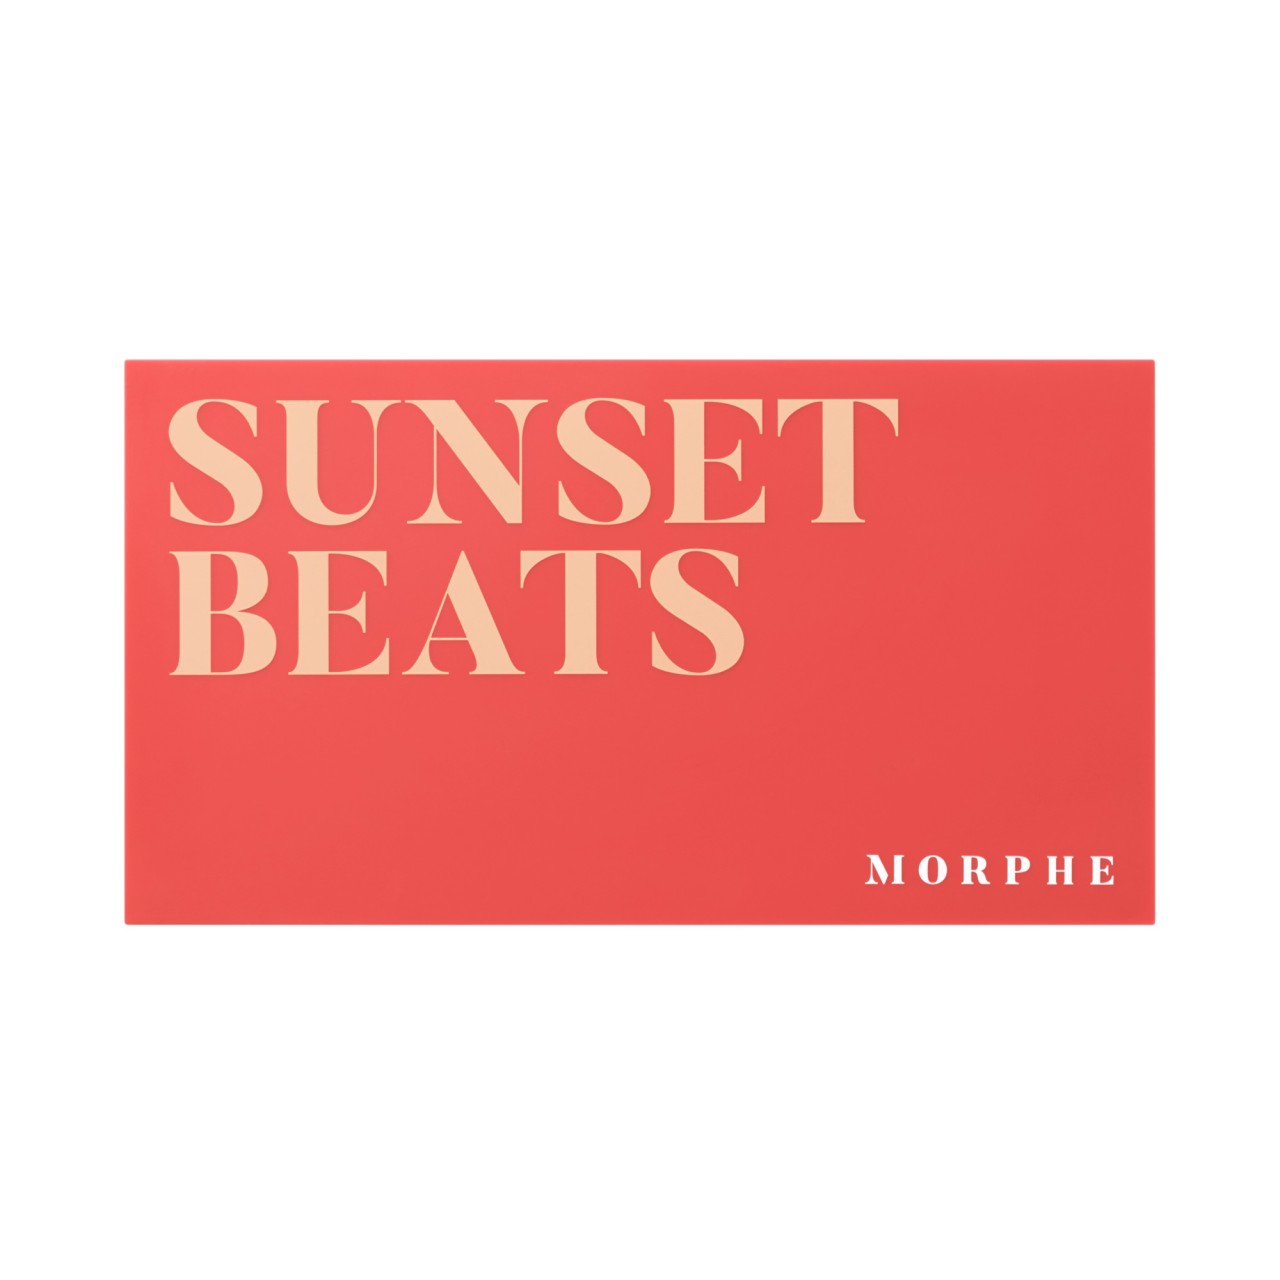 MORPHE - Eyeshadow Palettes 18S Sunset Beats - 